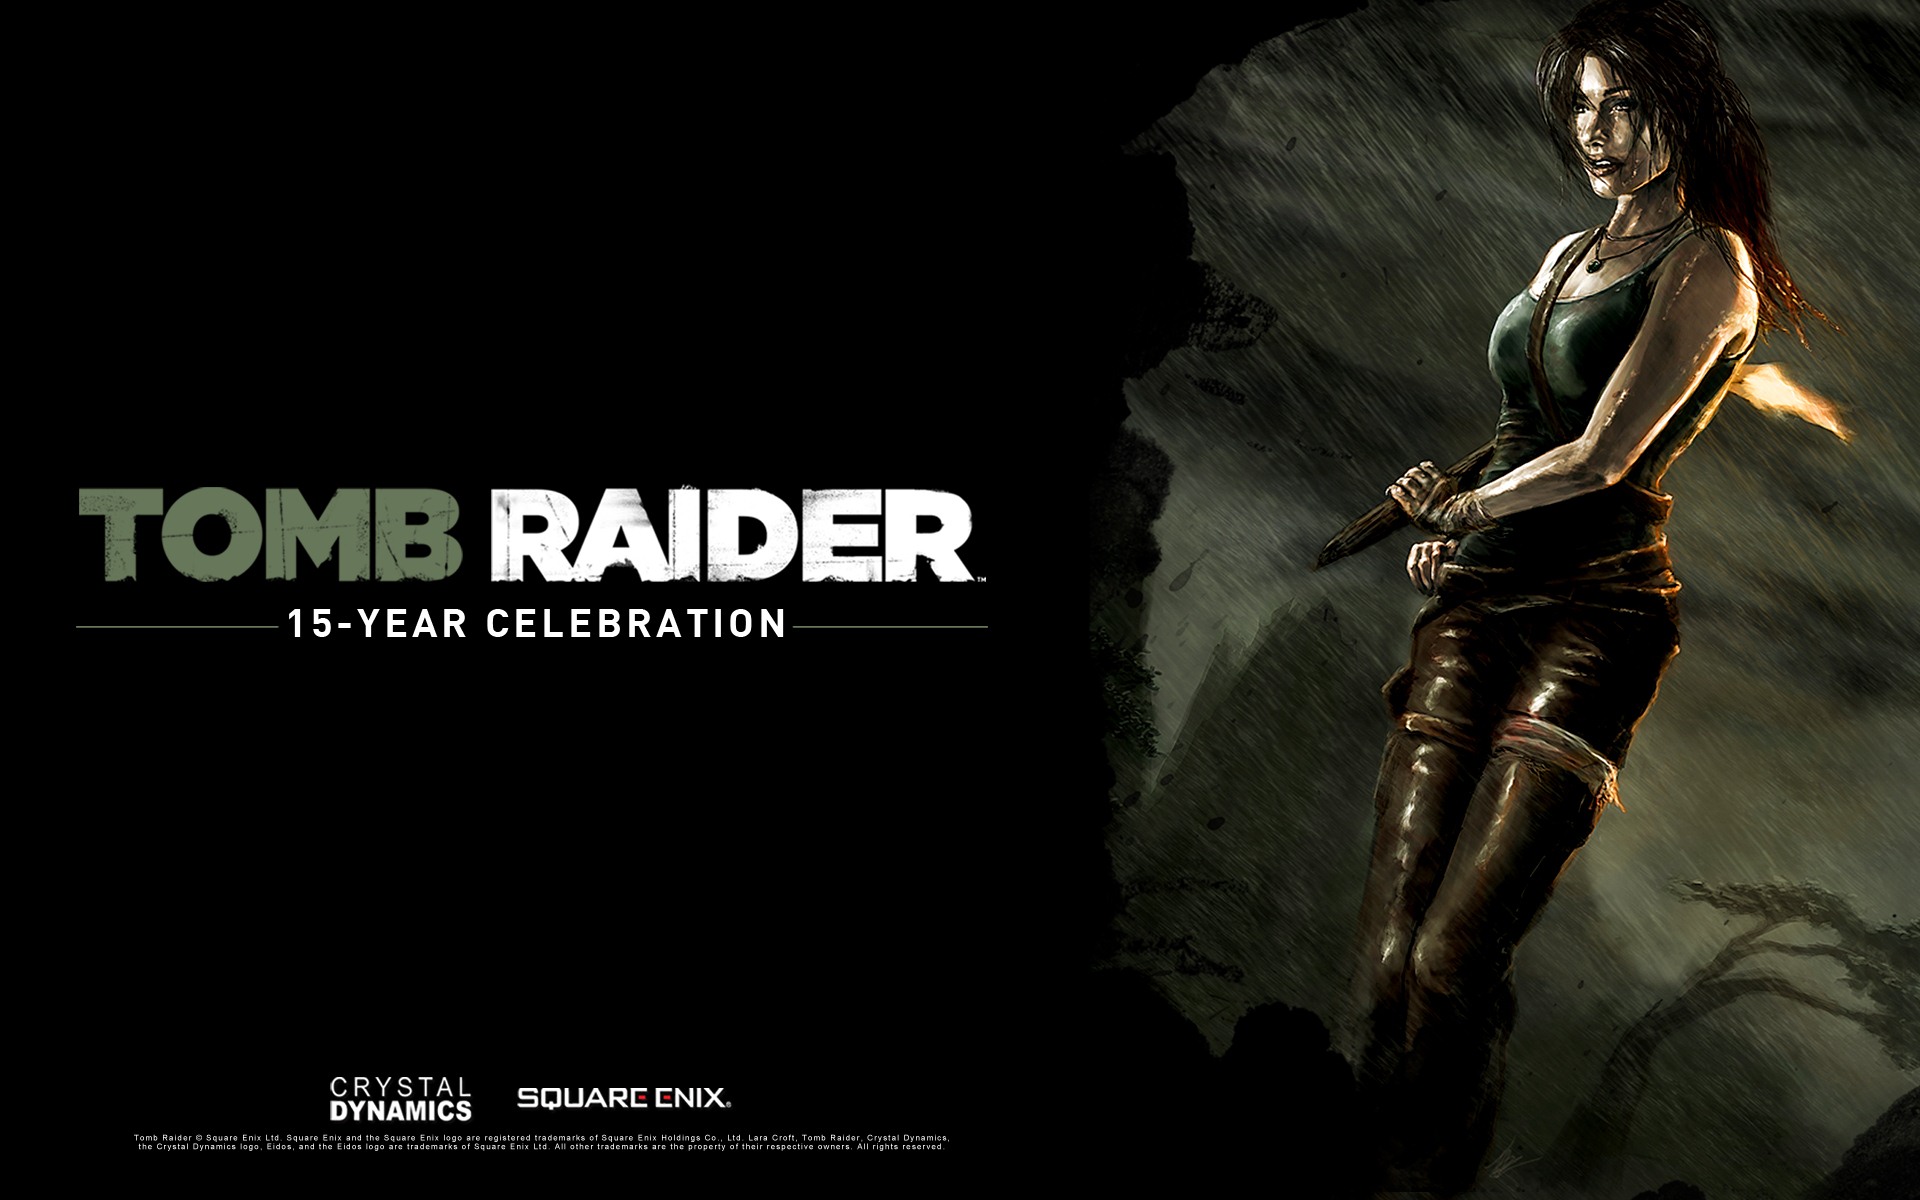 Tomb Raider 15-Year Celebration 古墓丽影15周年纪念版 高清壁纸2 - 1920x1200